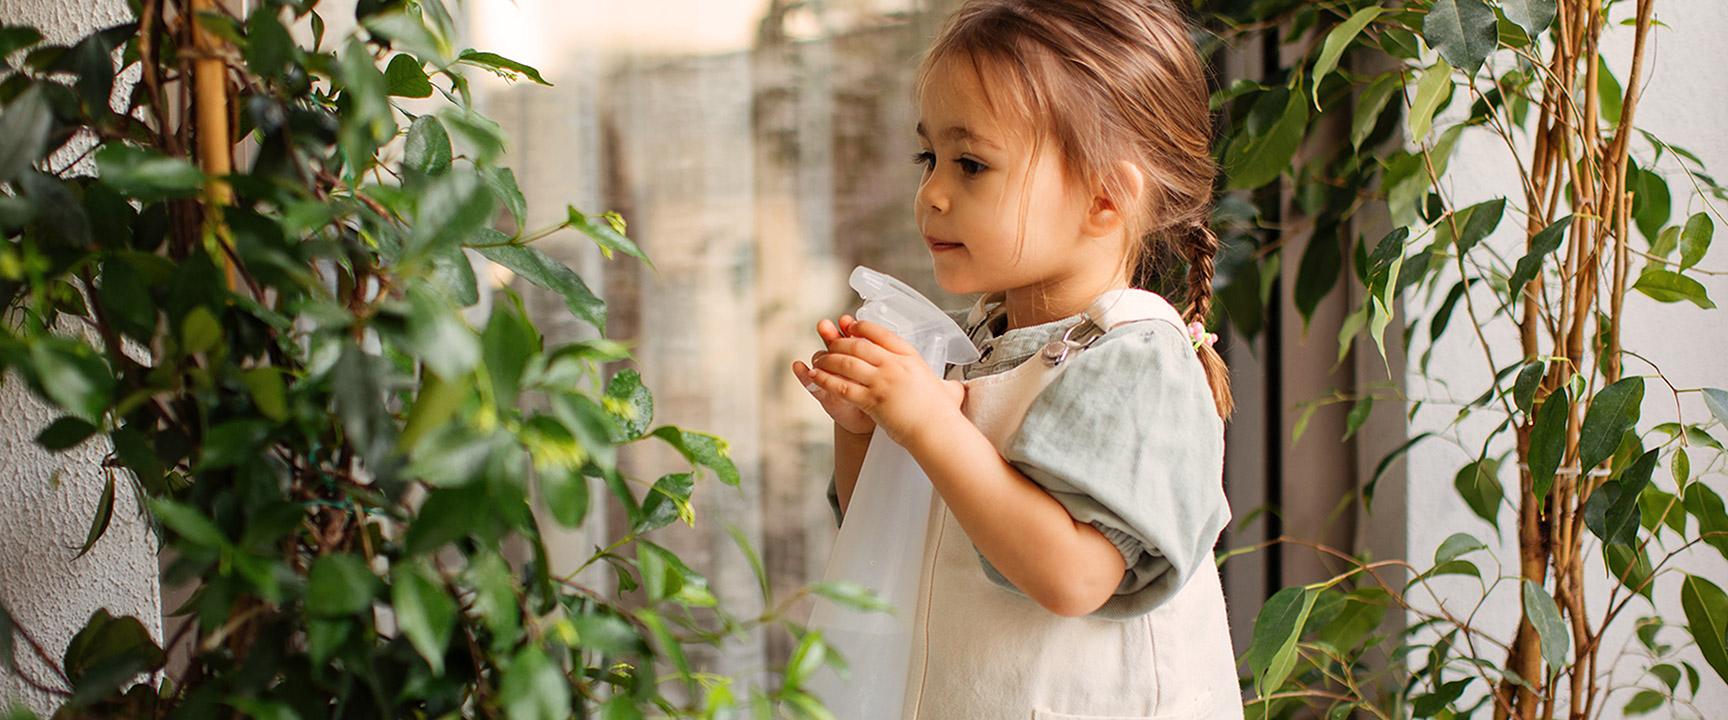 маленький ребенок опрыскивает комнатные растения